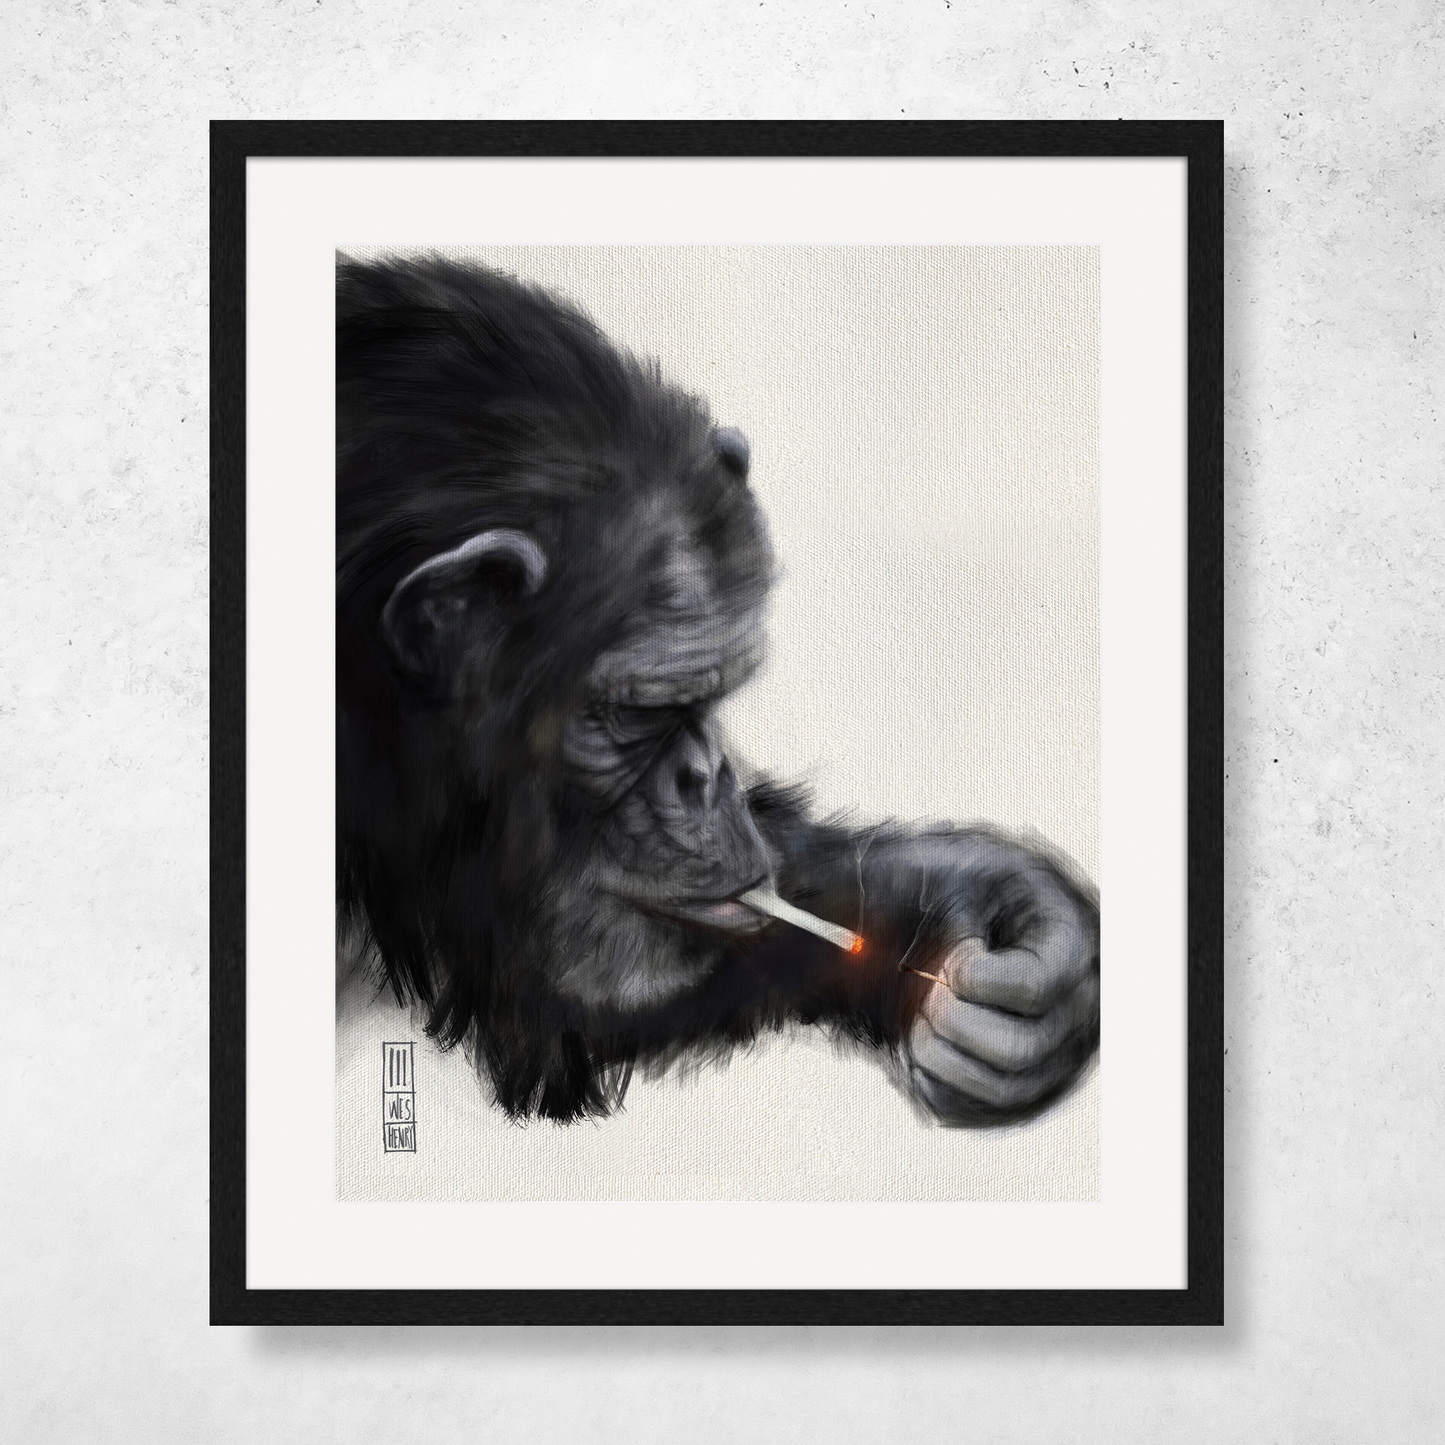 Smokin' Chimp #1